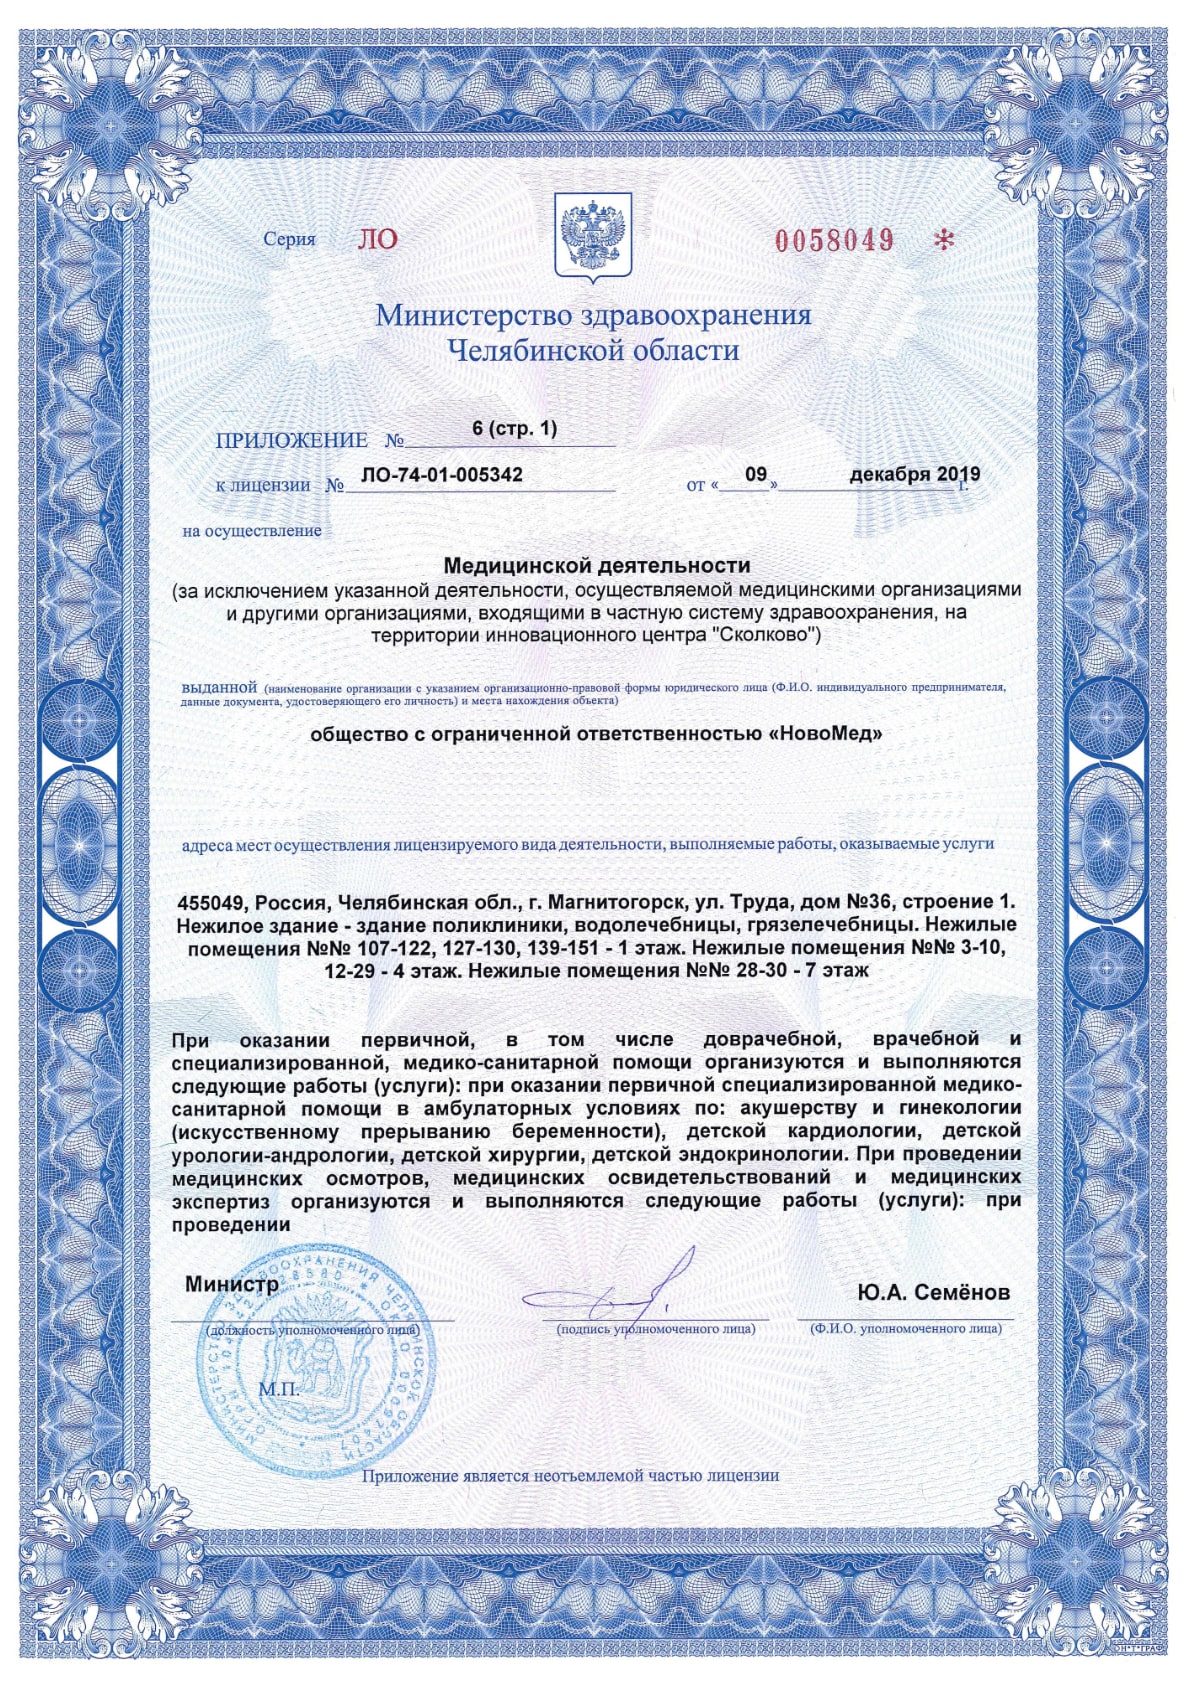 Приложение №6 к лицензии ЛО-74-01-005342, лист 1